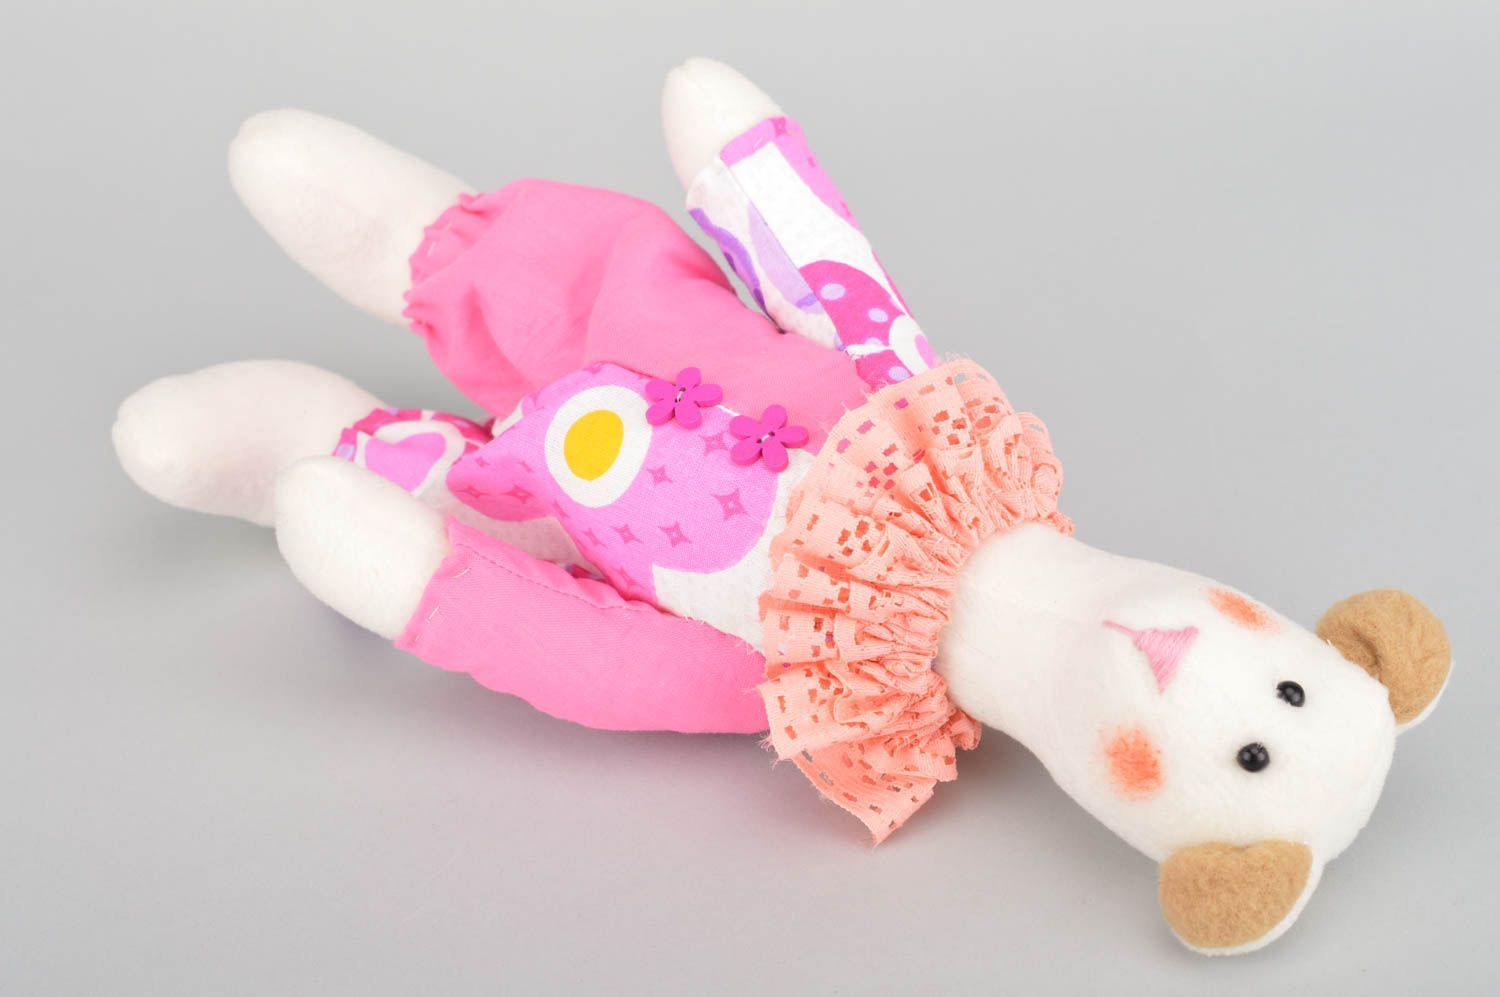 Kuscheltier Bär handmade rosa weiches Kuscheltier Geschenk für Kind künstlerisch foto 5